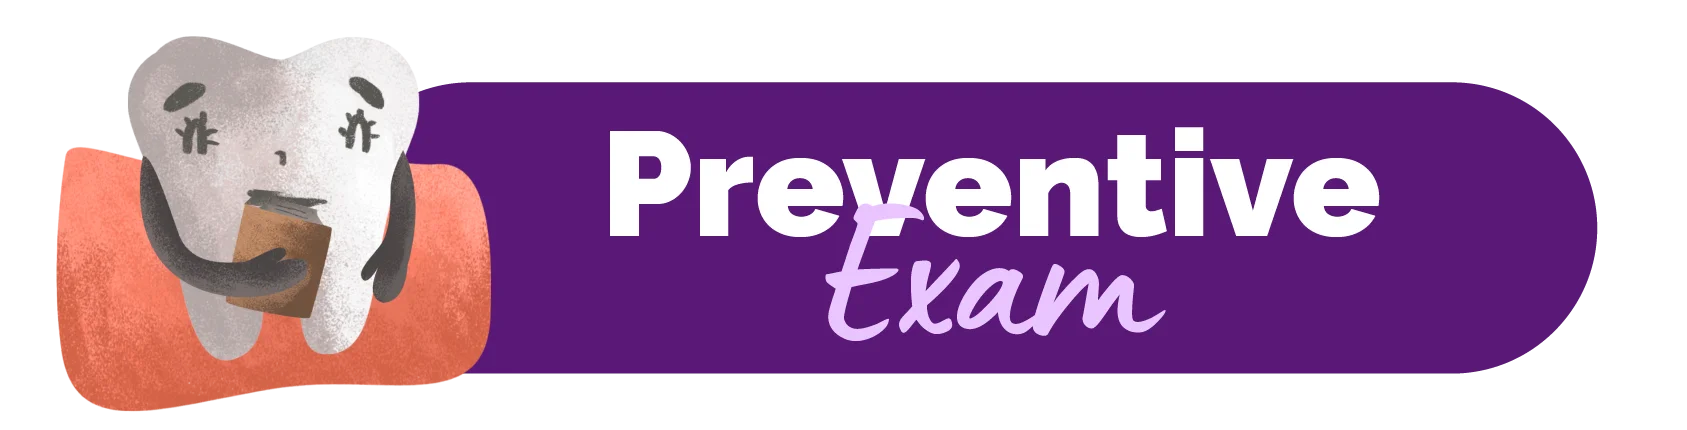 Preventive Exam